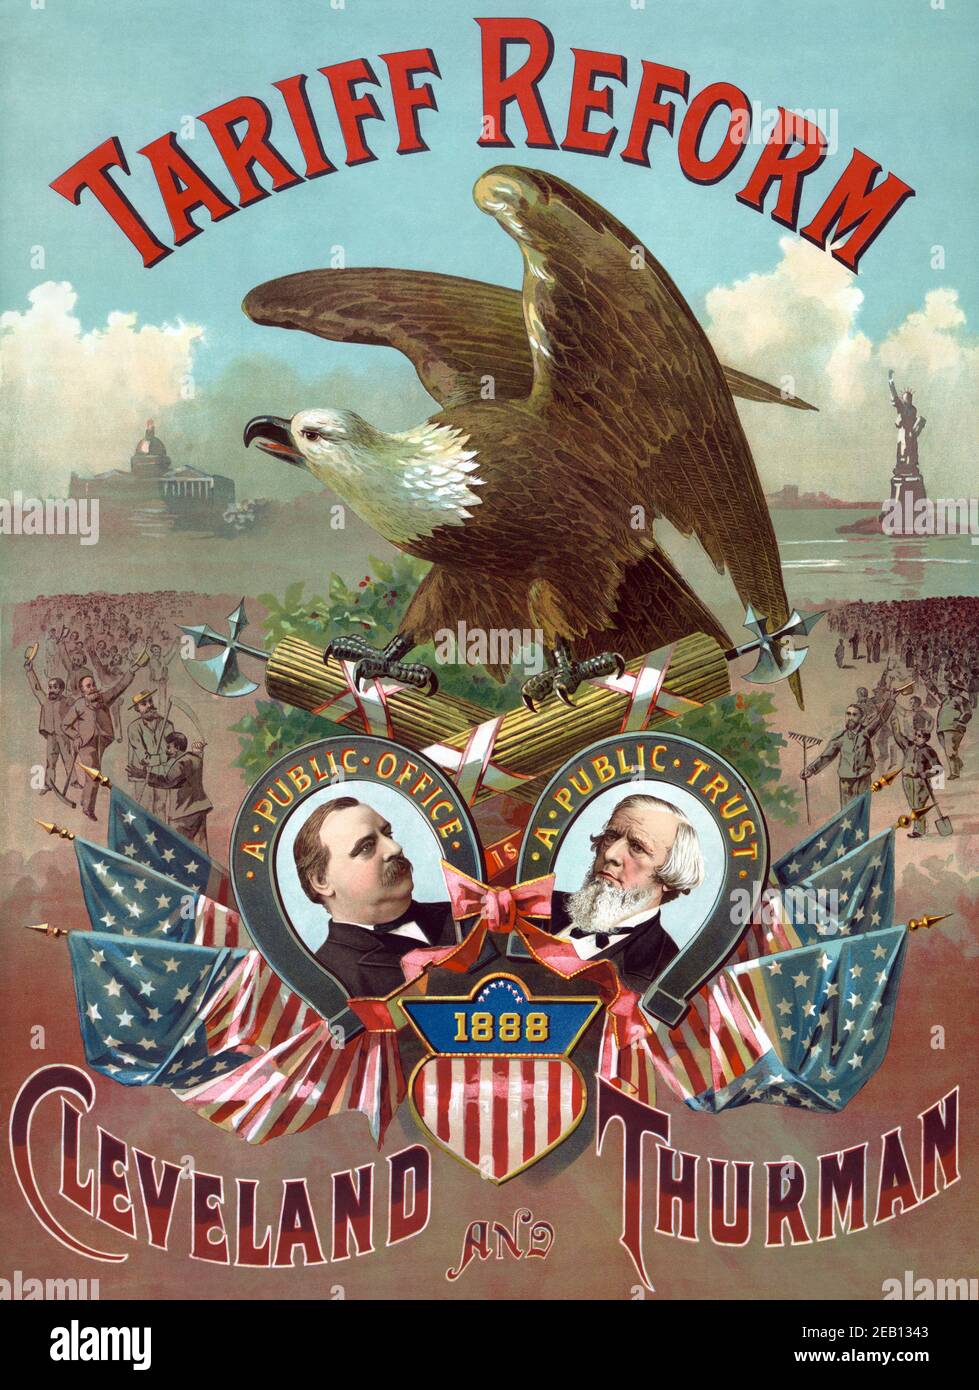 Zollreform. Cleveland und Thurman 1888 Stockfoto